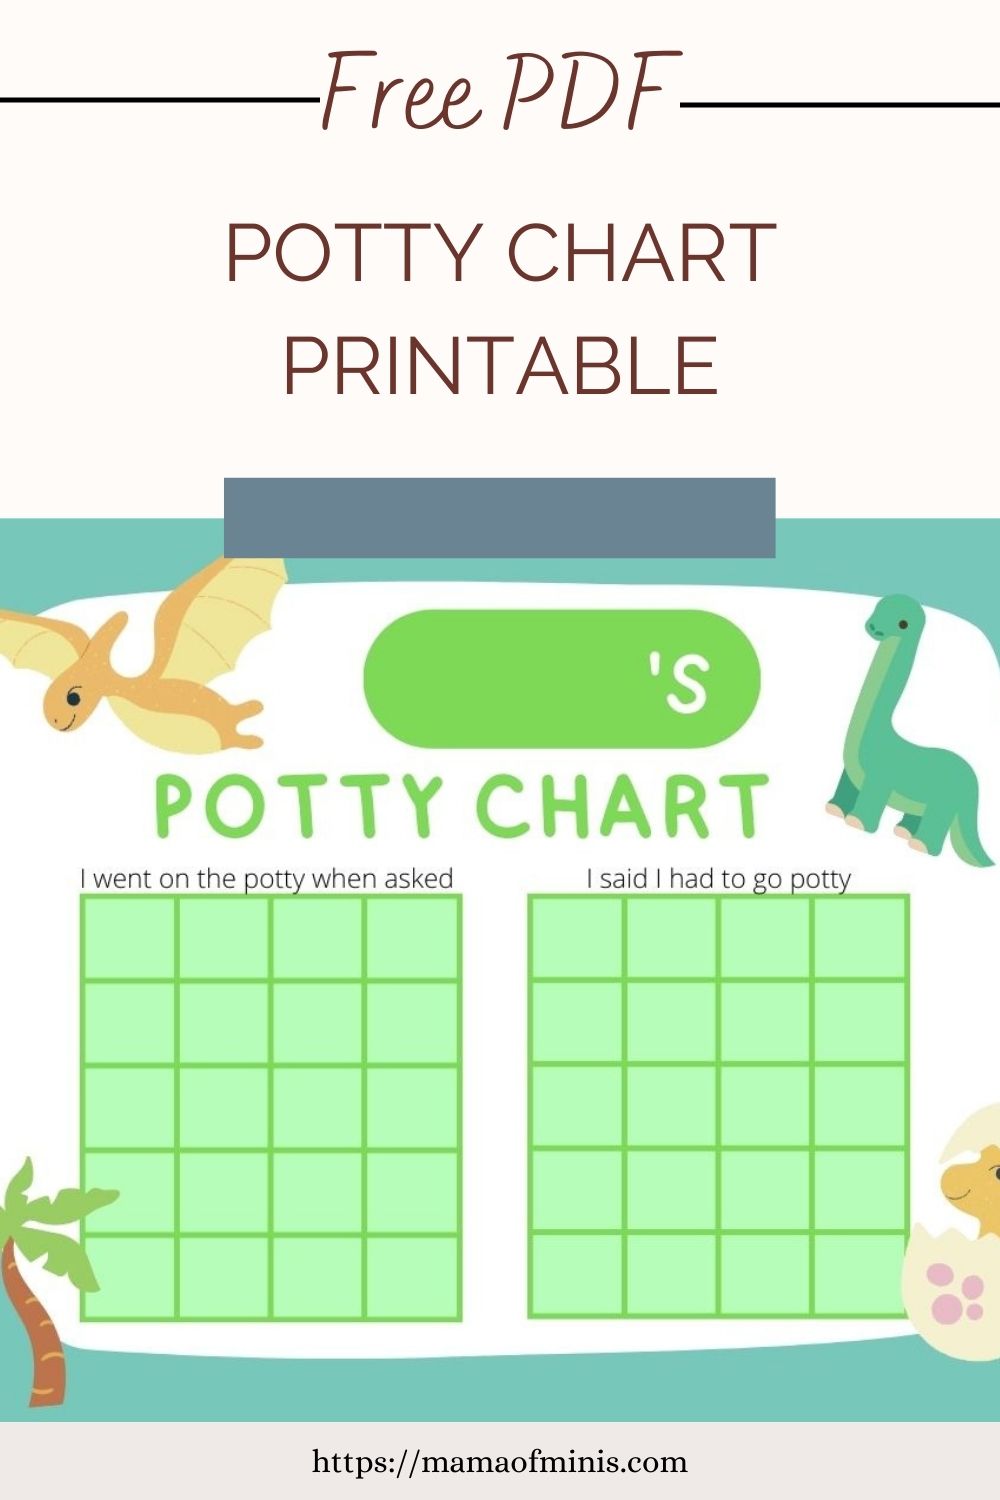 Free PDF Potty Chart Printable